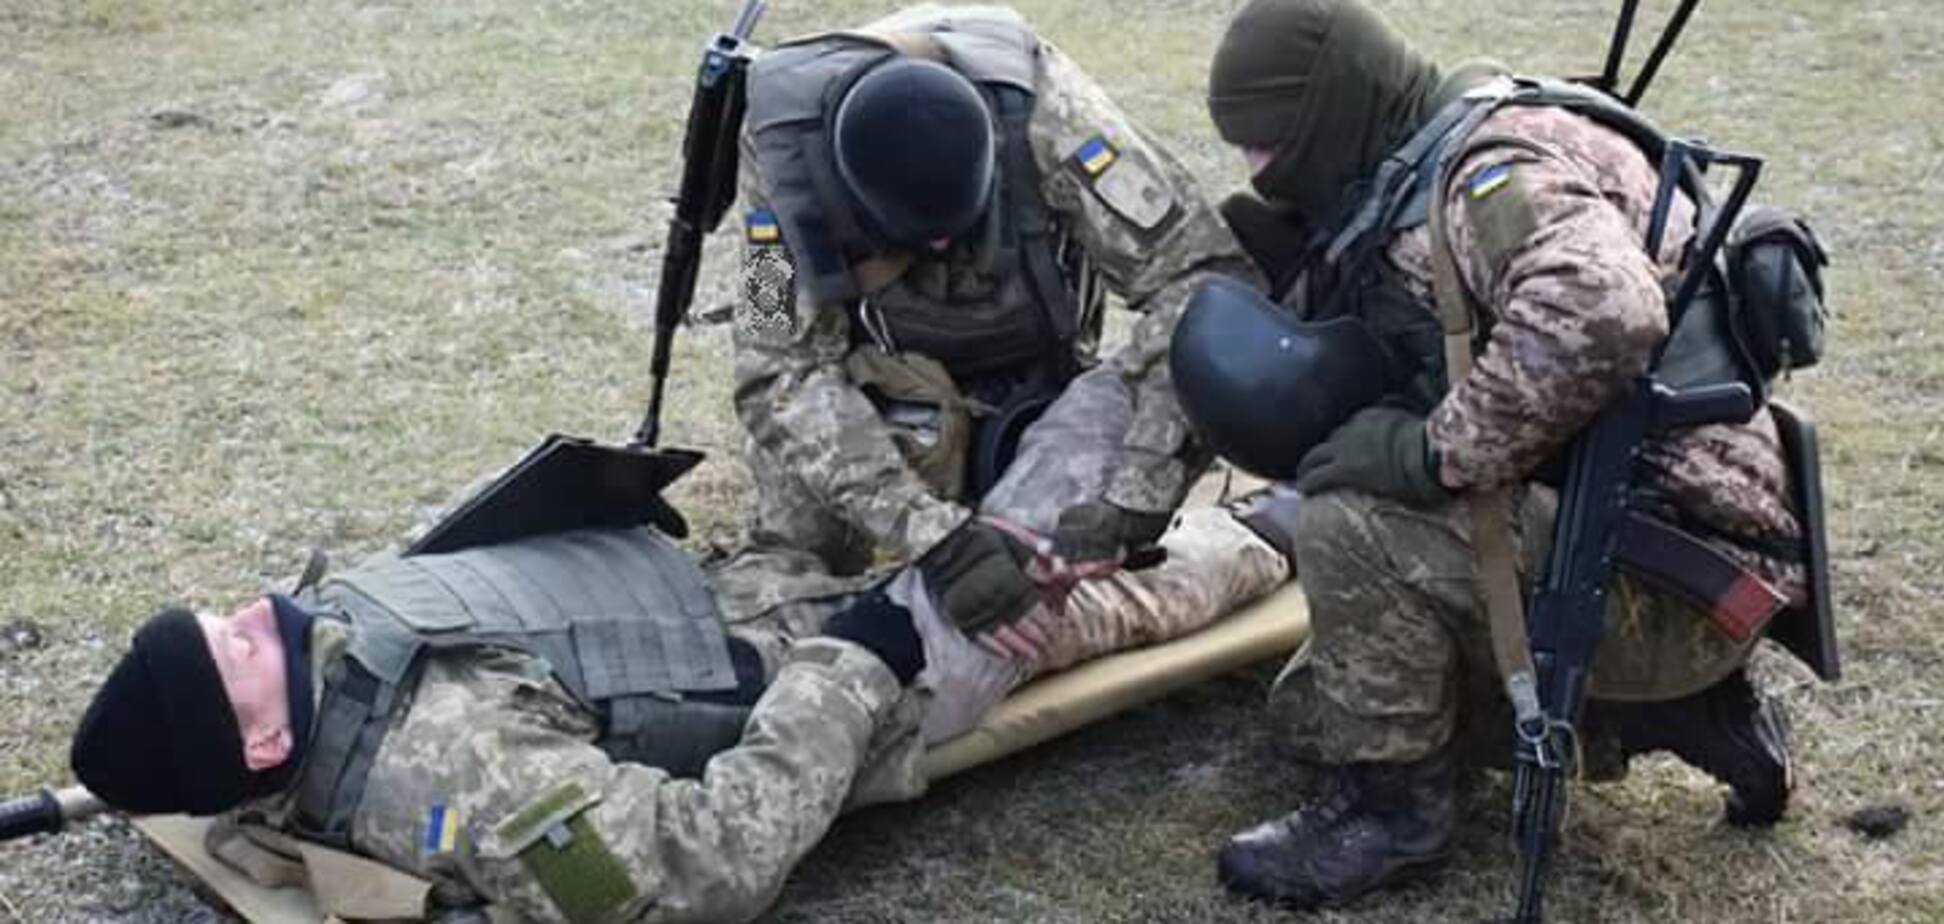 Разрывались мины: стало известно о новых провокациях террористов на Донбассе